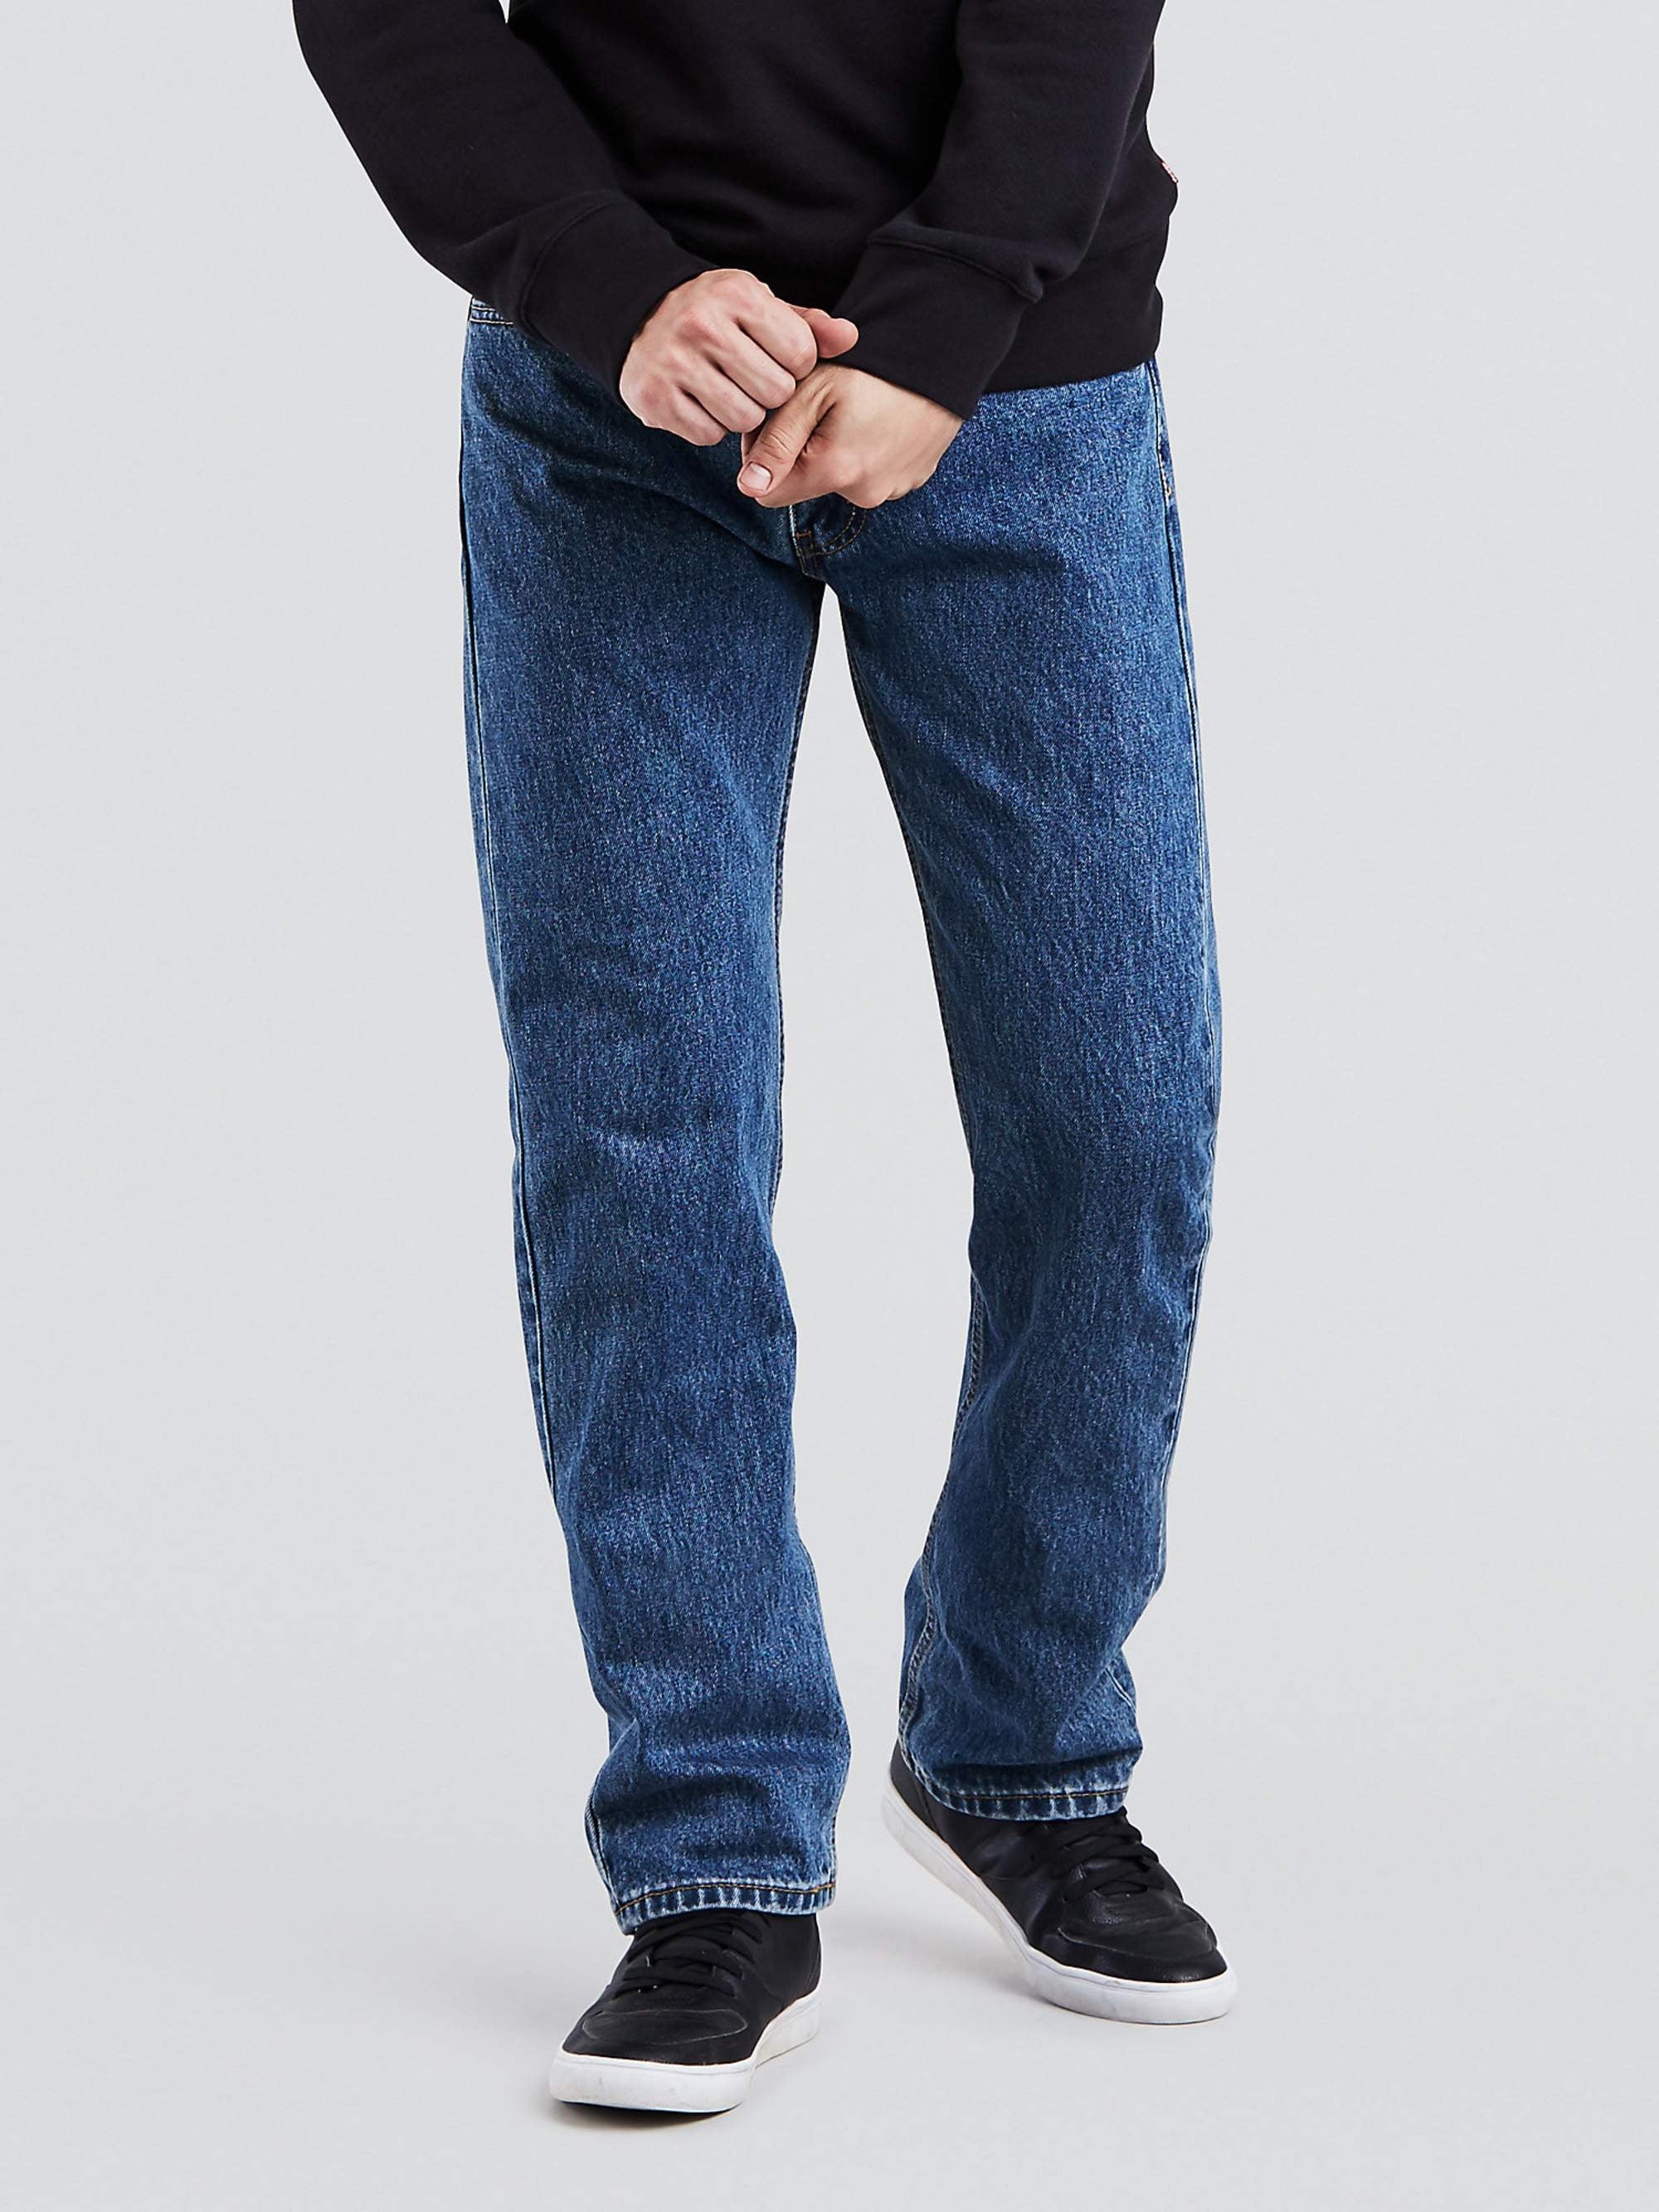 Levis Men's 505 Fit Jeans - Walmart.com